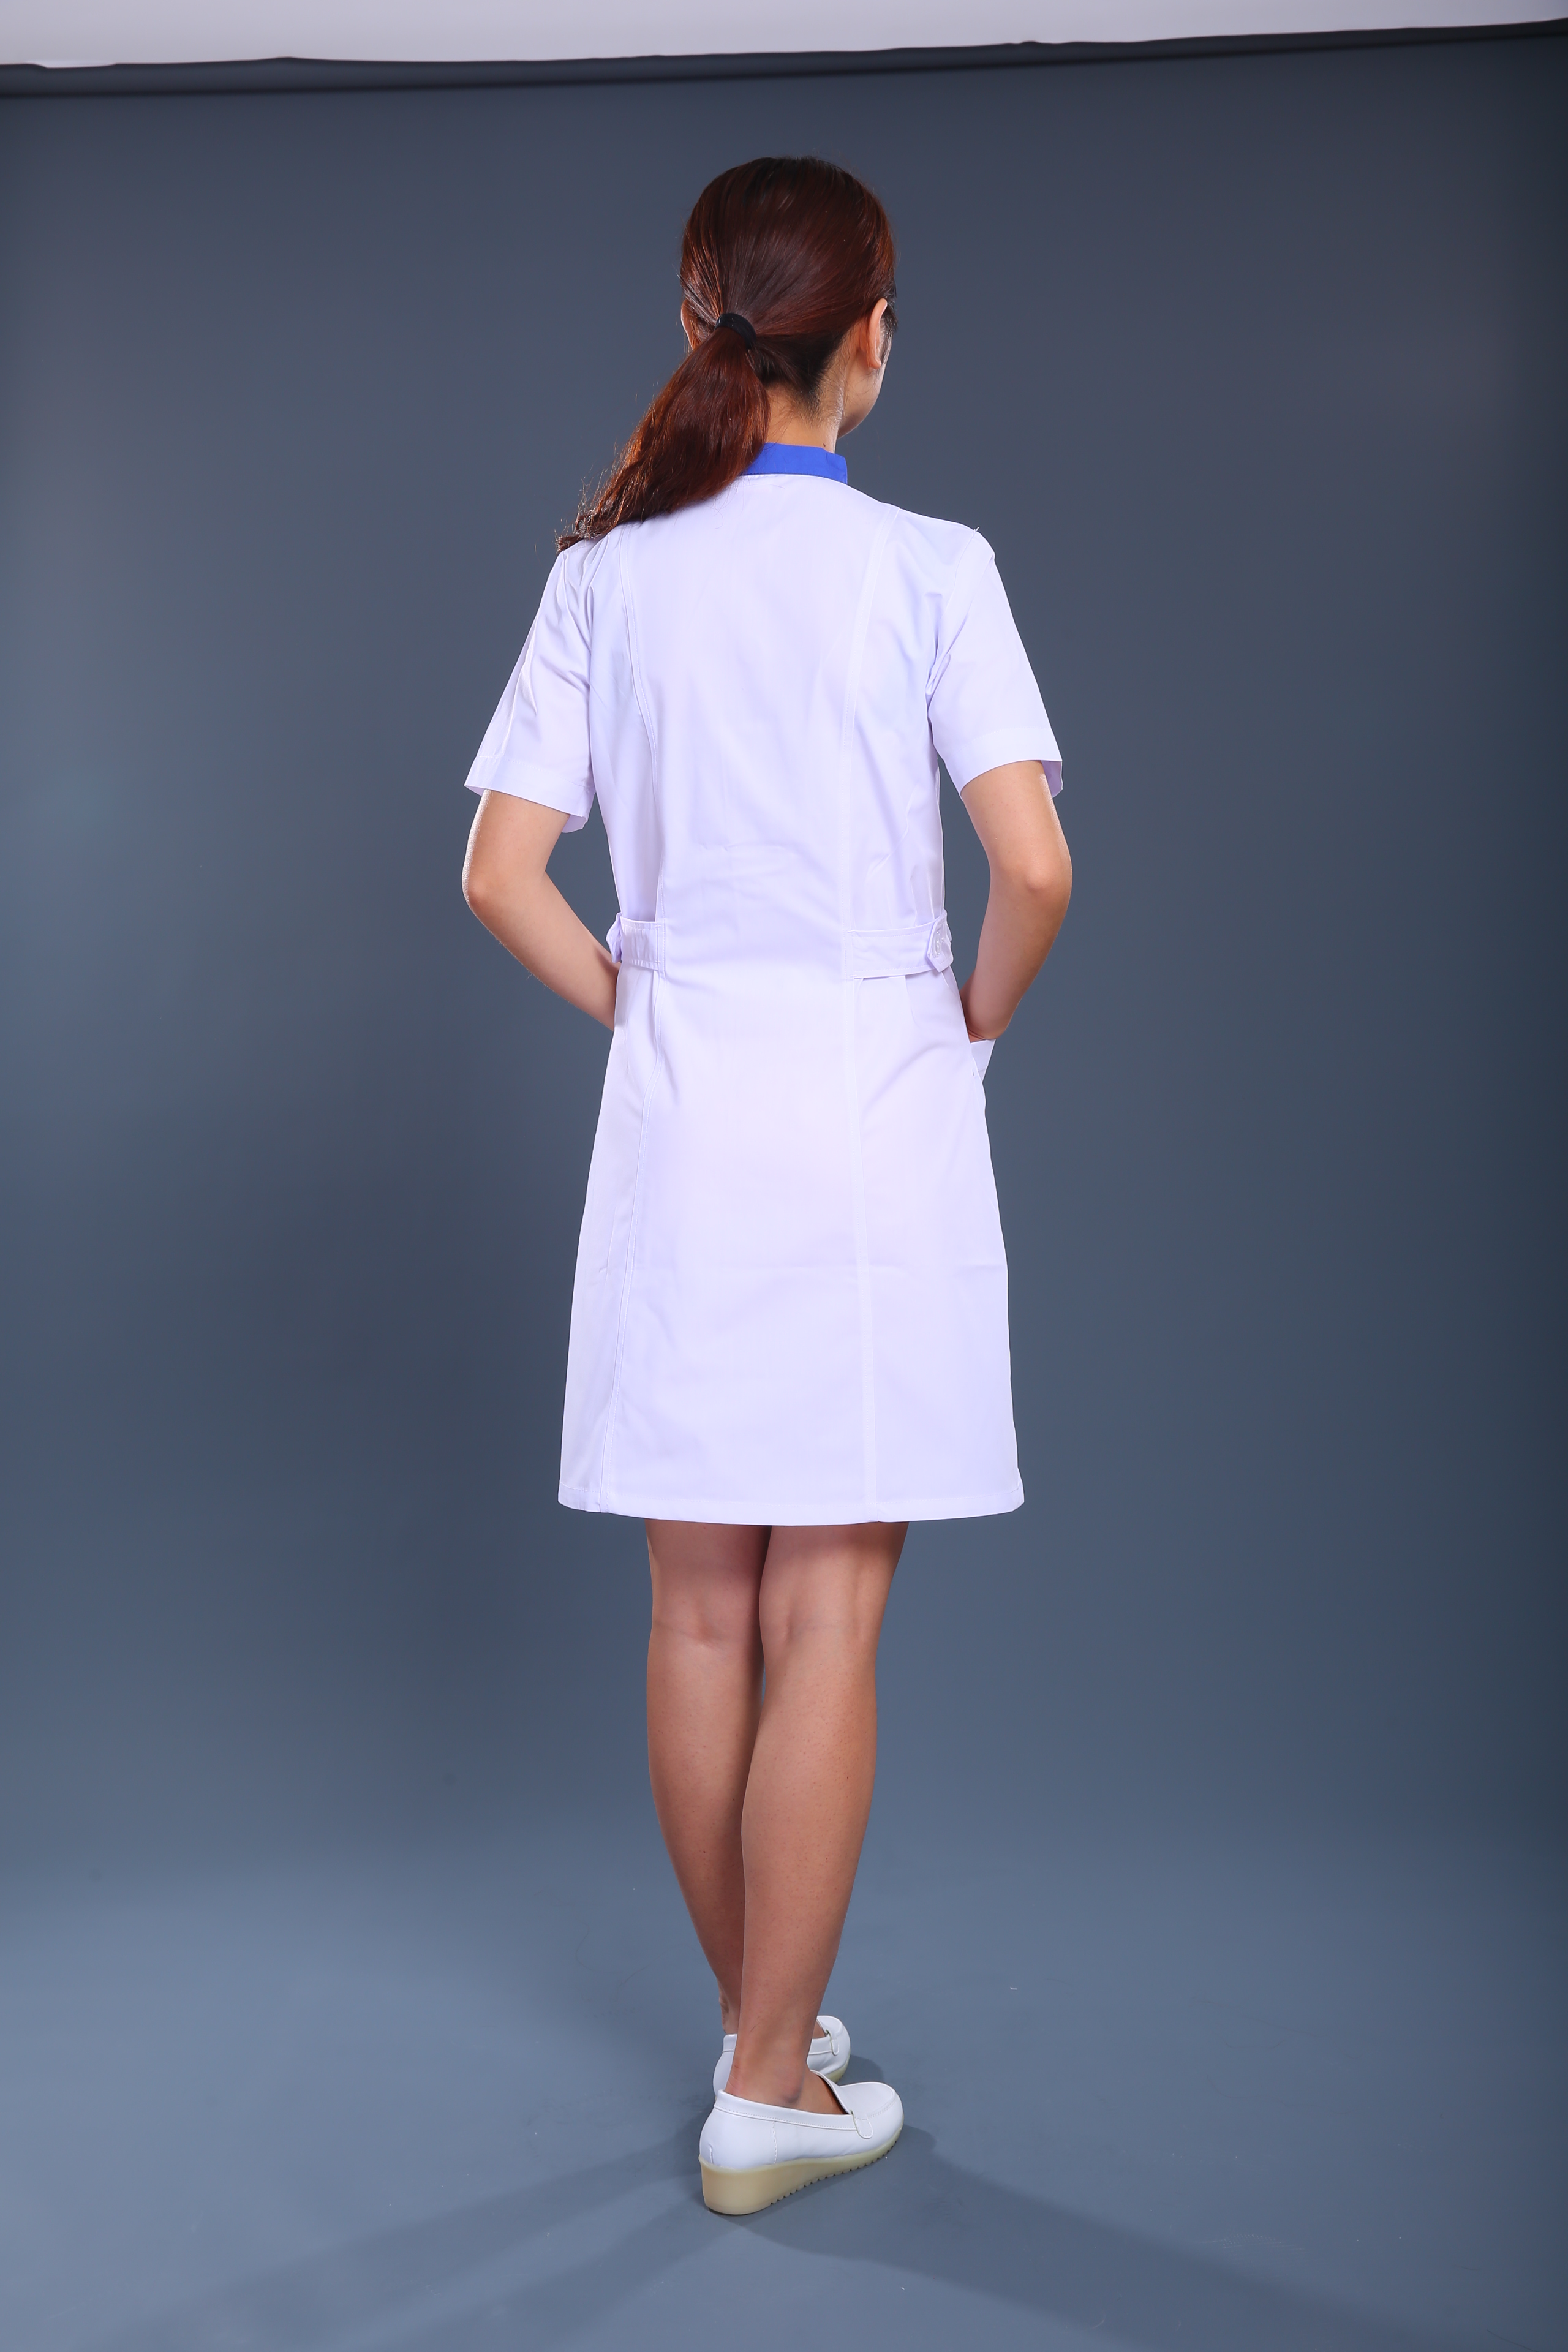 蓝白款护士制服